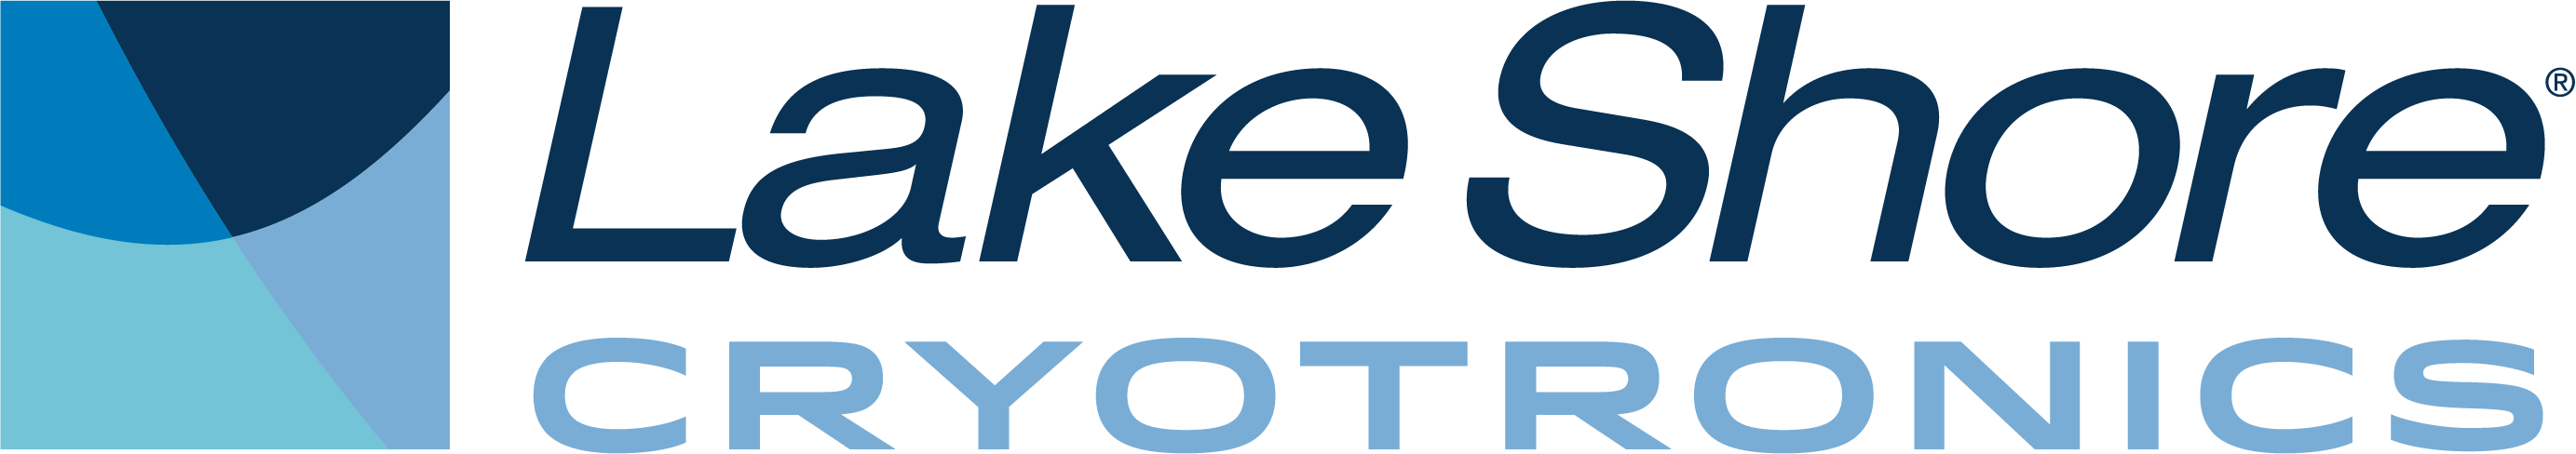 Lake Shore Cryotronics, Inc. logo